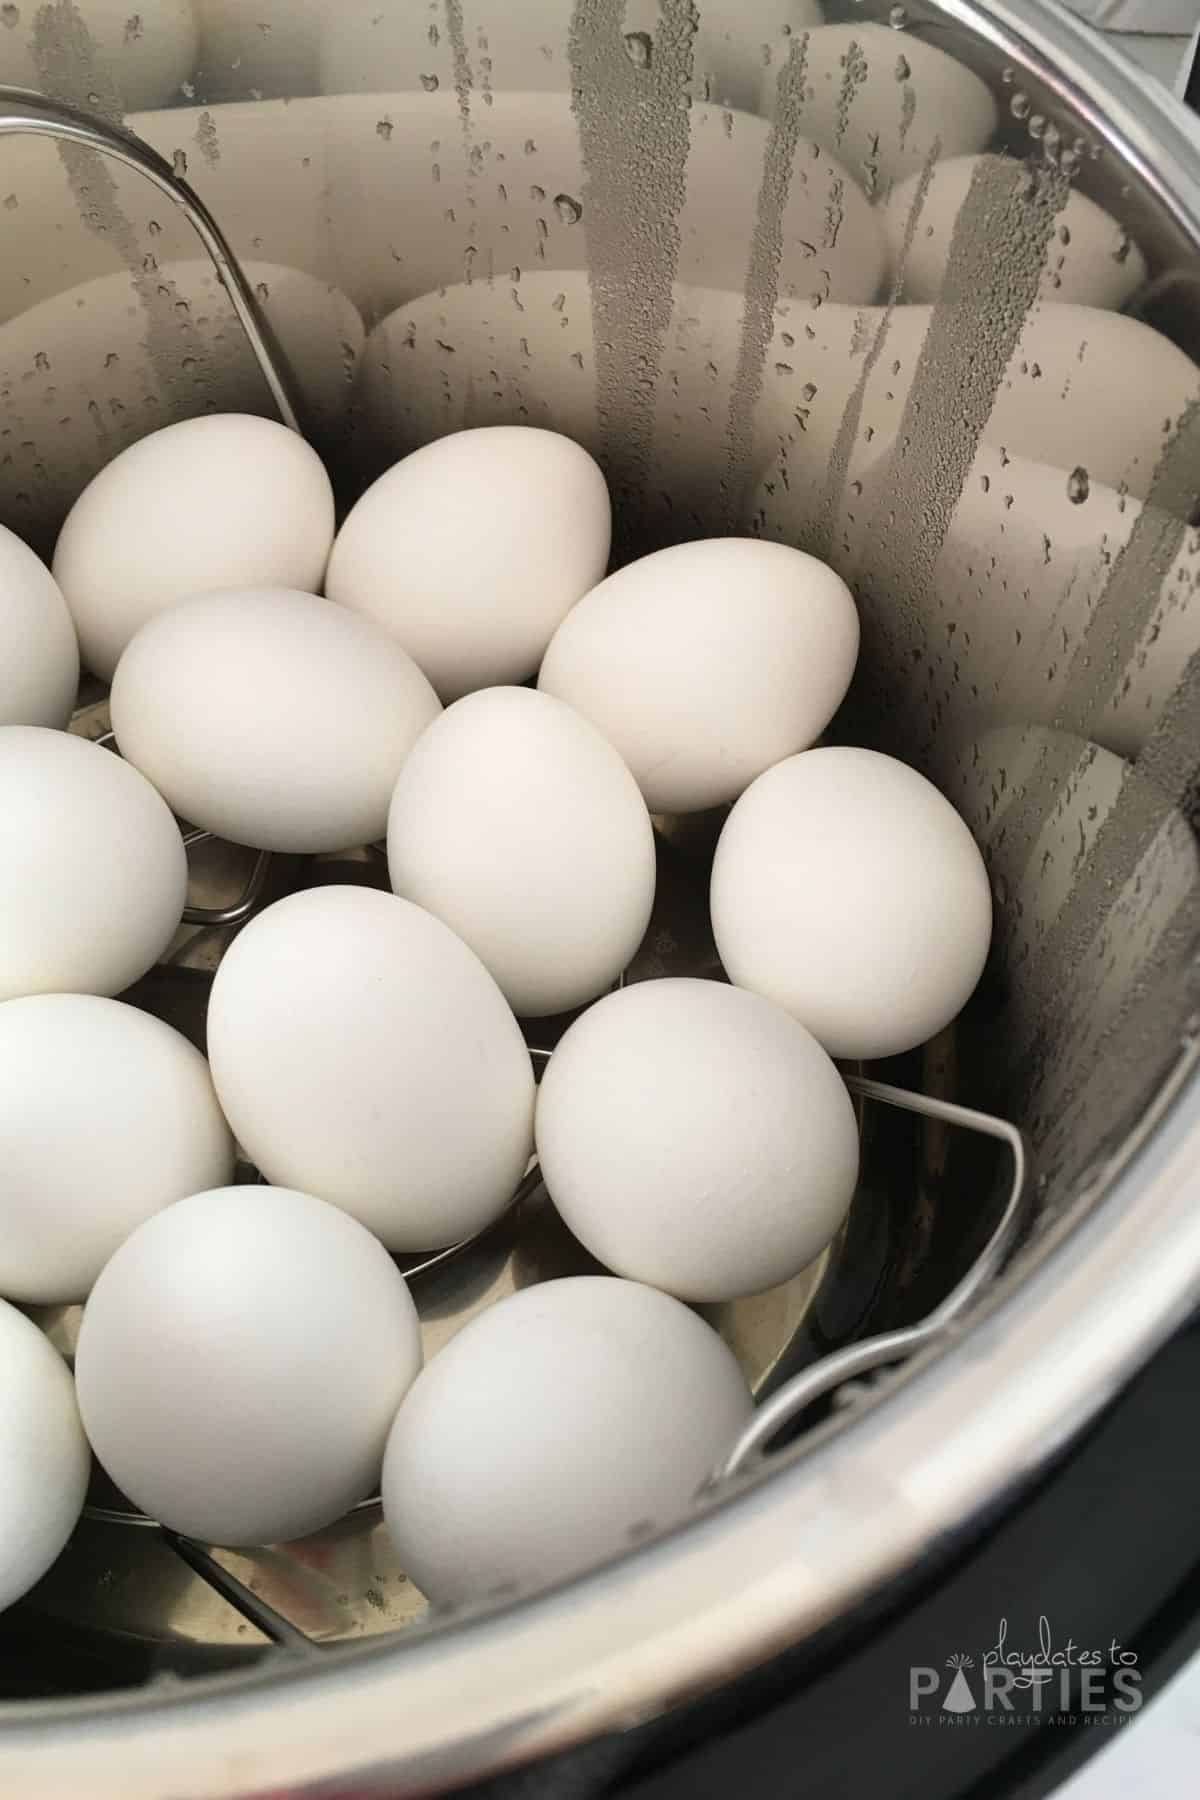 White eggs inside an Instant Pot.